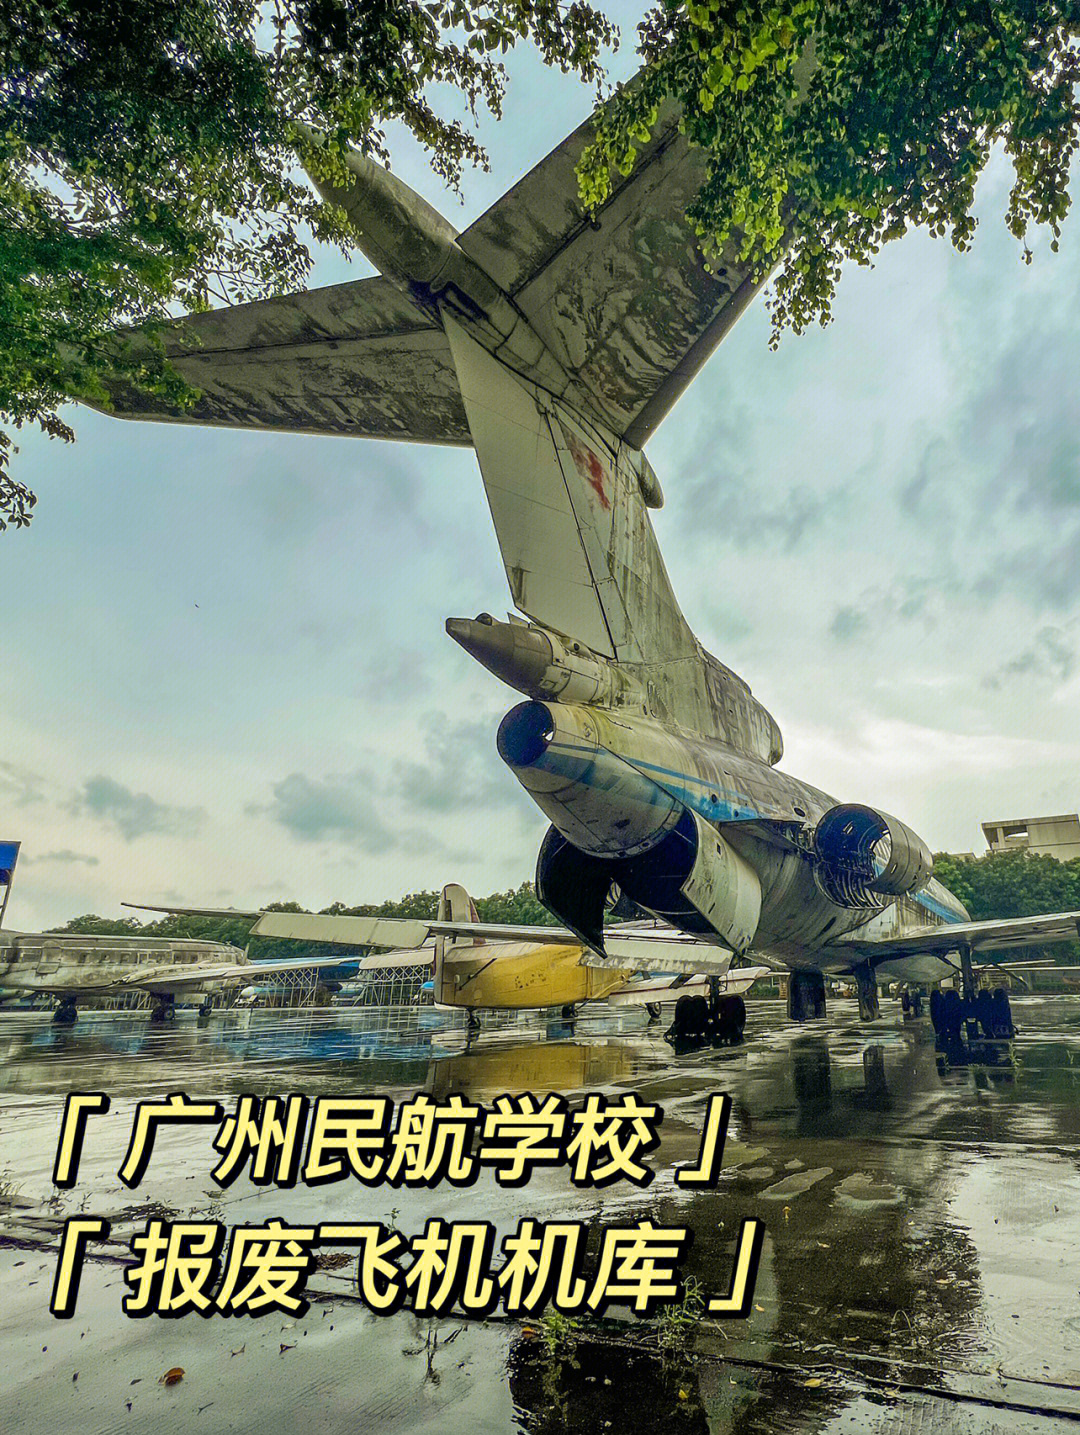 广州民用航空飞行学院图片